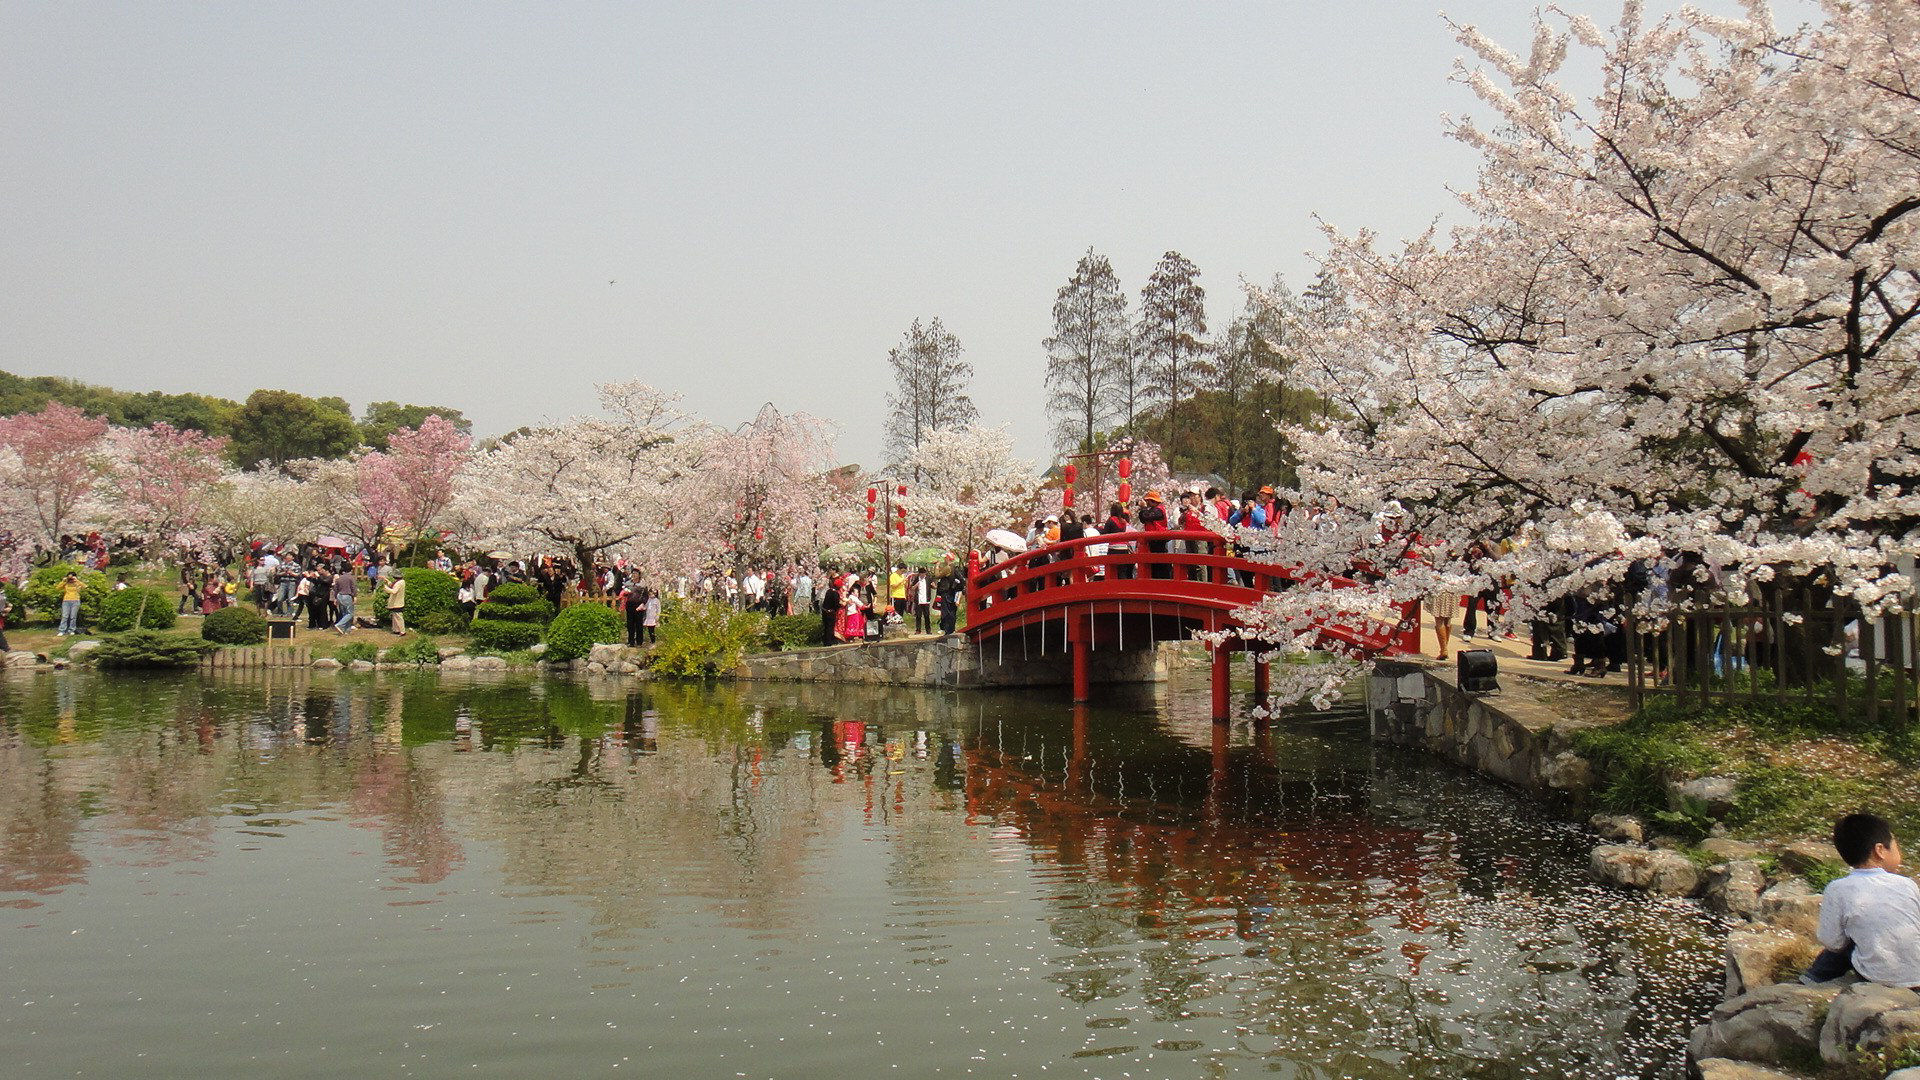 As cerejeiras em flor do as boas vindas  primavera na China com um dos maiores espetculos naturais da Terra 06